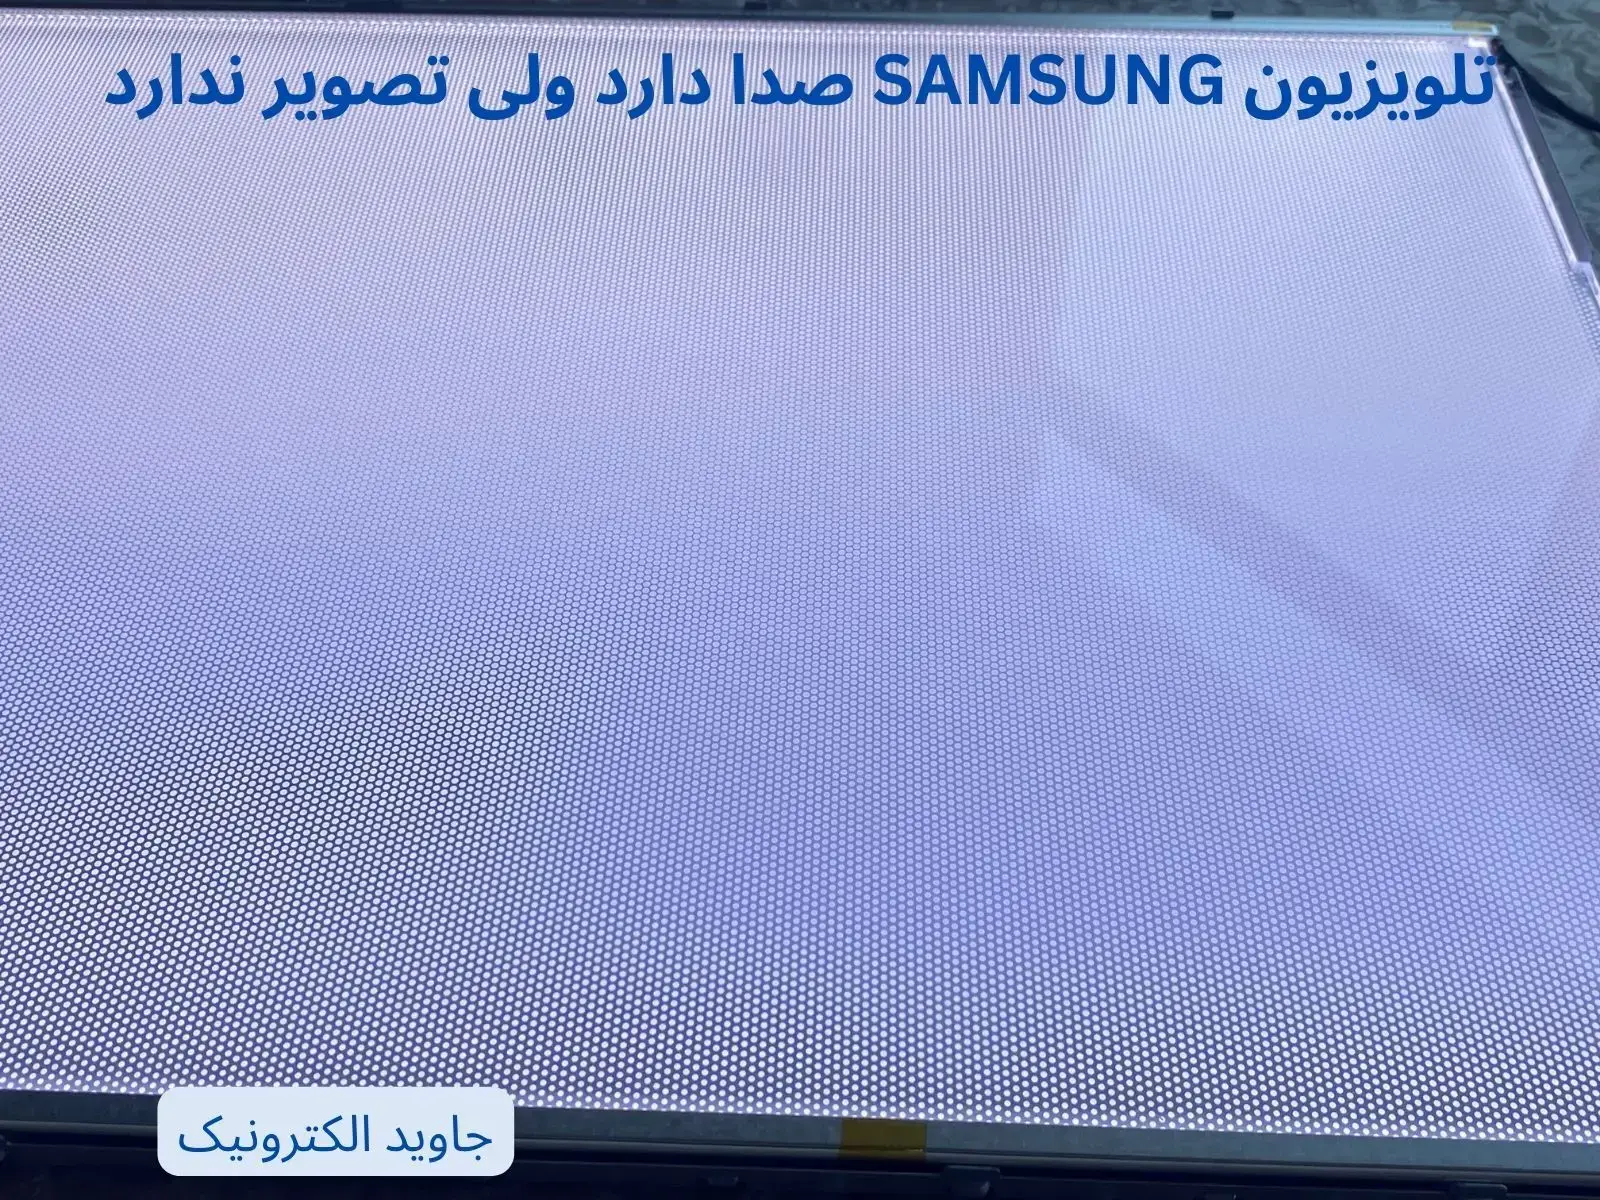 تلویزیون SAMSUNG صدا دارد اما تصویر ندارد- JAVID ELECTRONIC